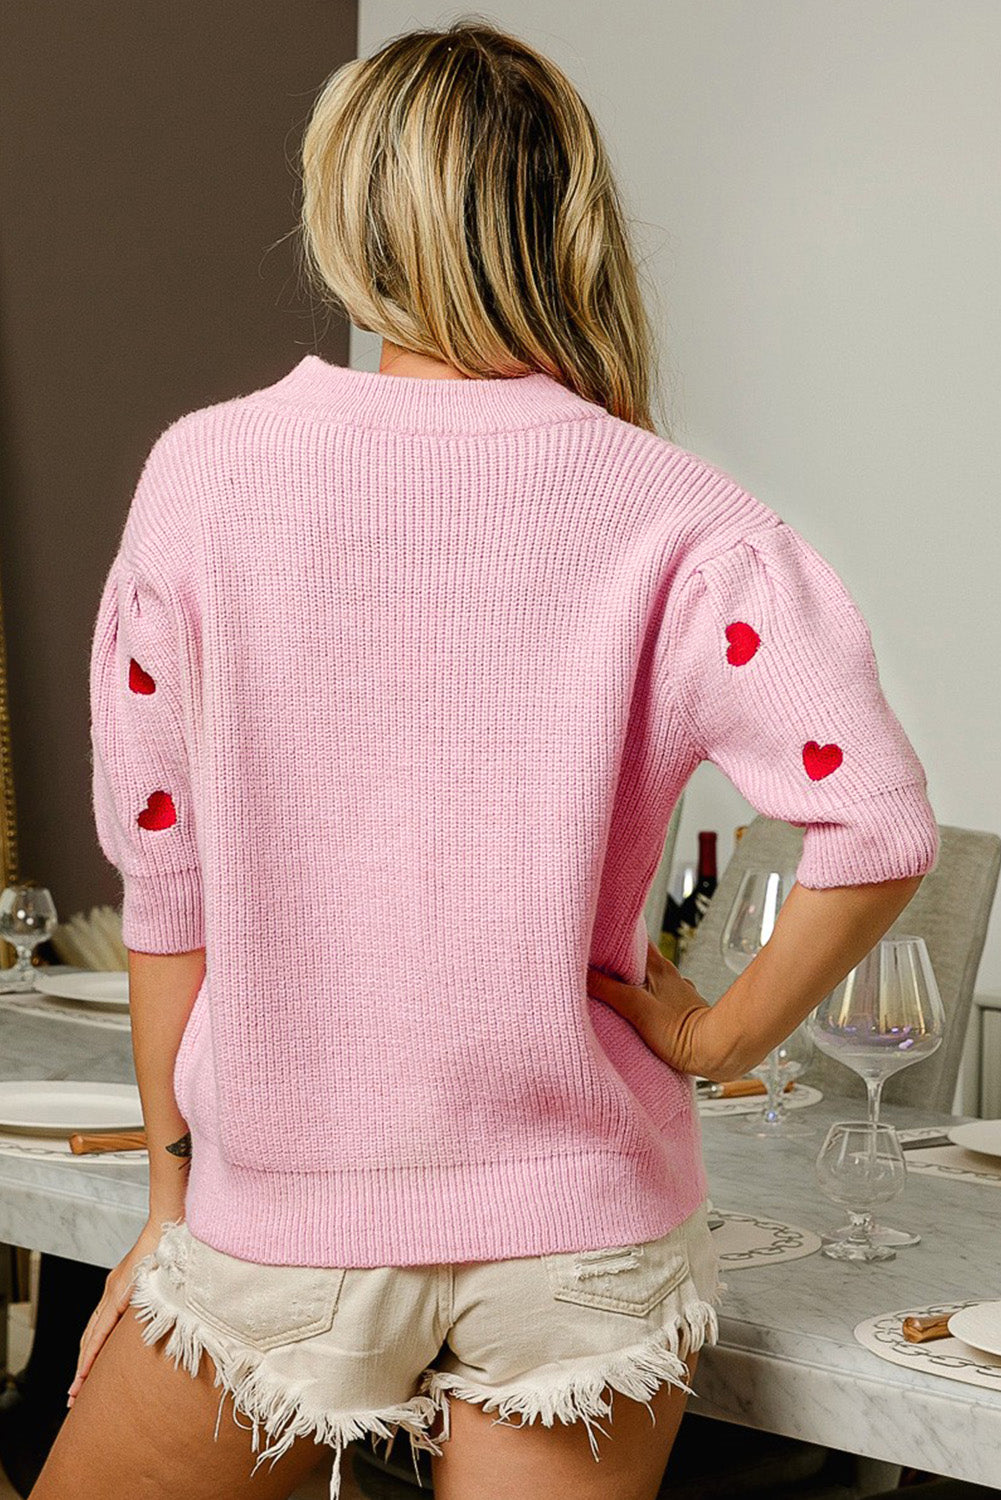 Ružičasti pulover s uzorkom srca za Valentinovo do pola rukava